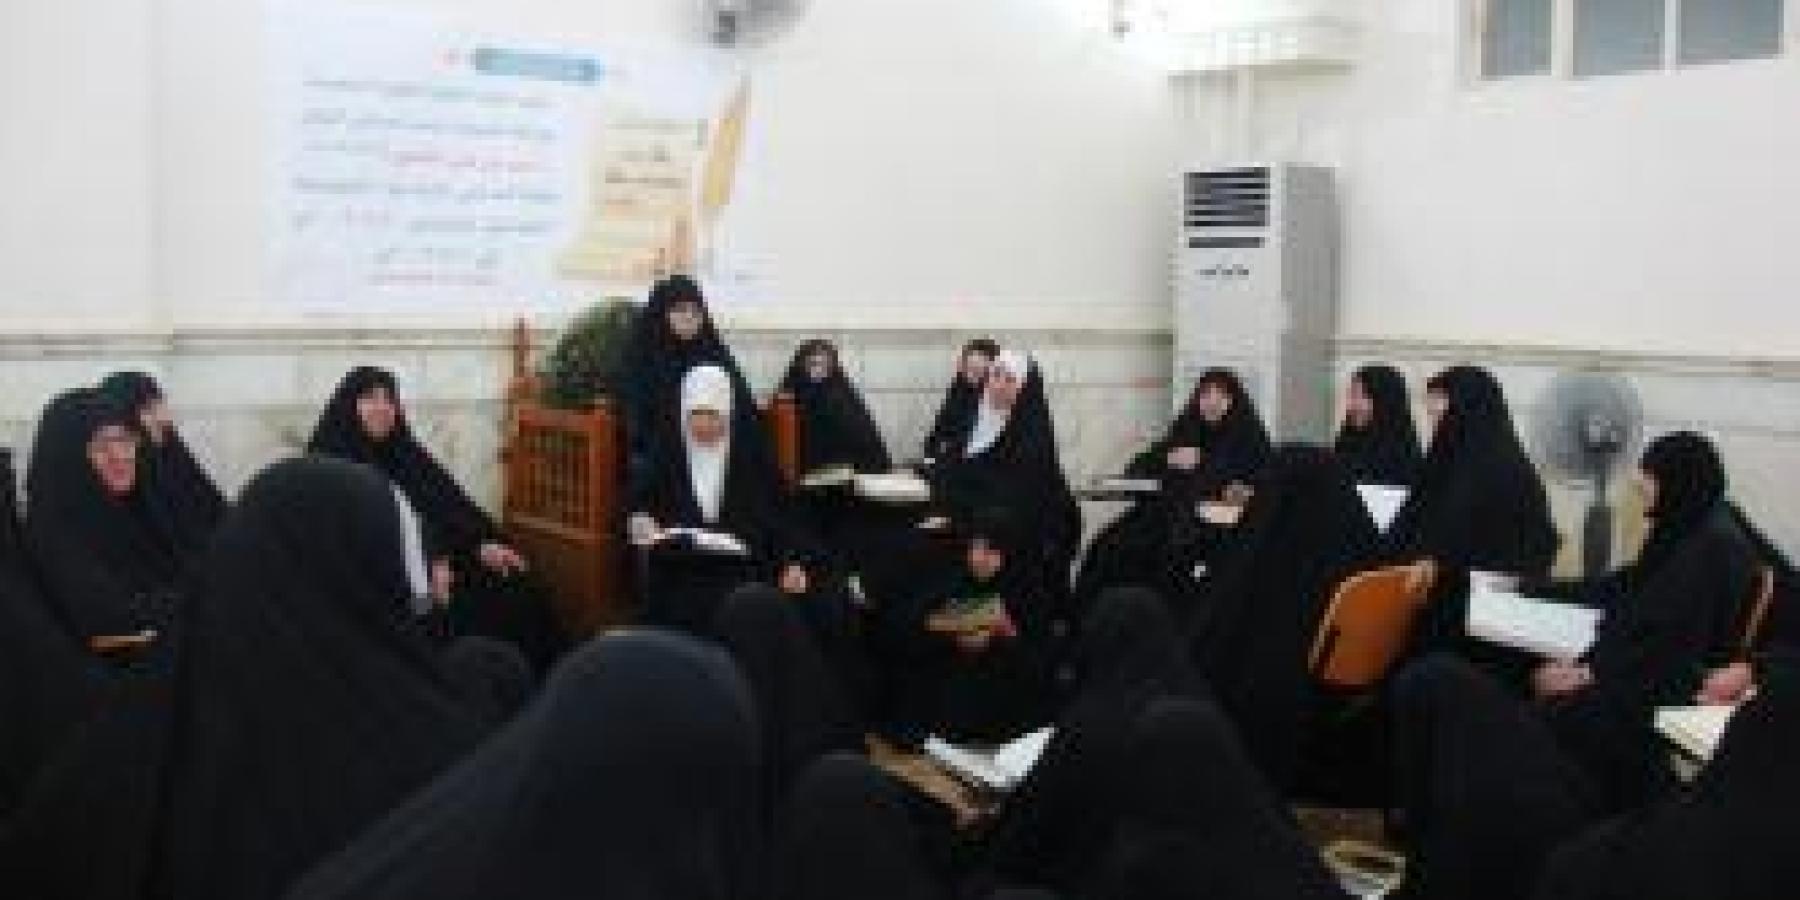 وحدة التعليم النسوي تقيم جلسات قرآنية طيلة شهر رمضان المبارك